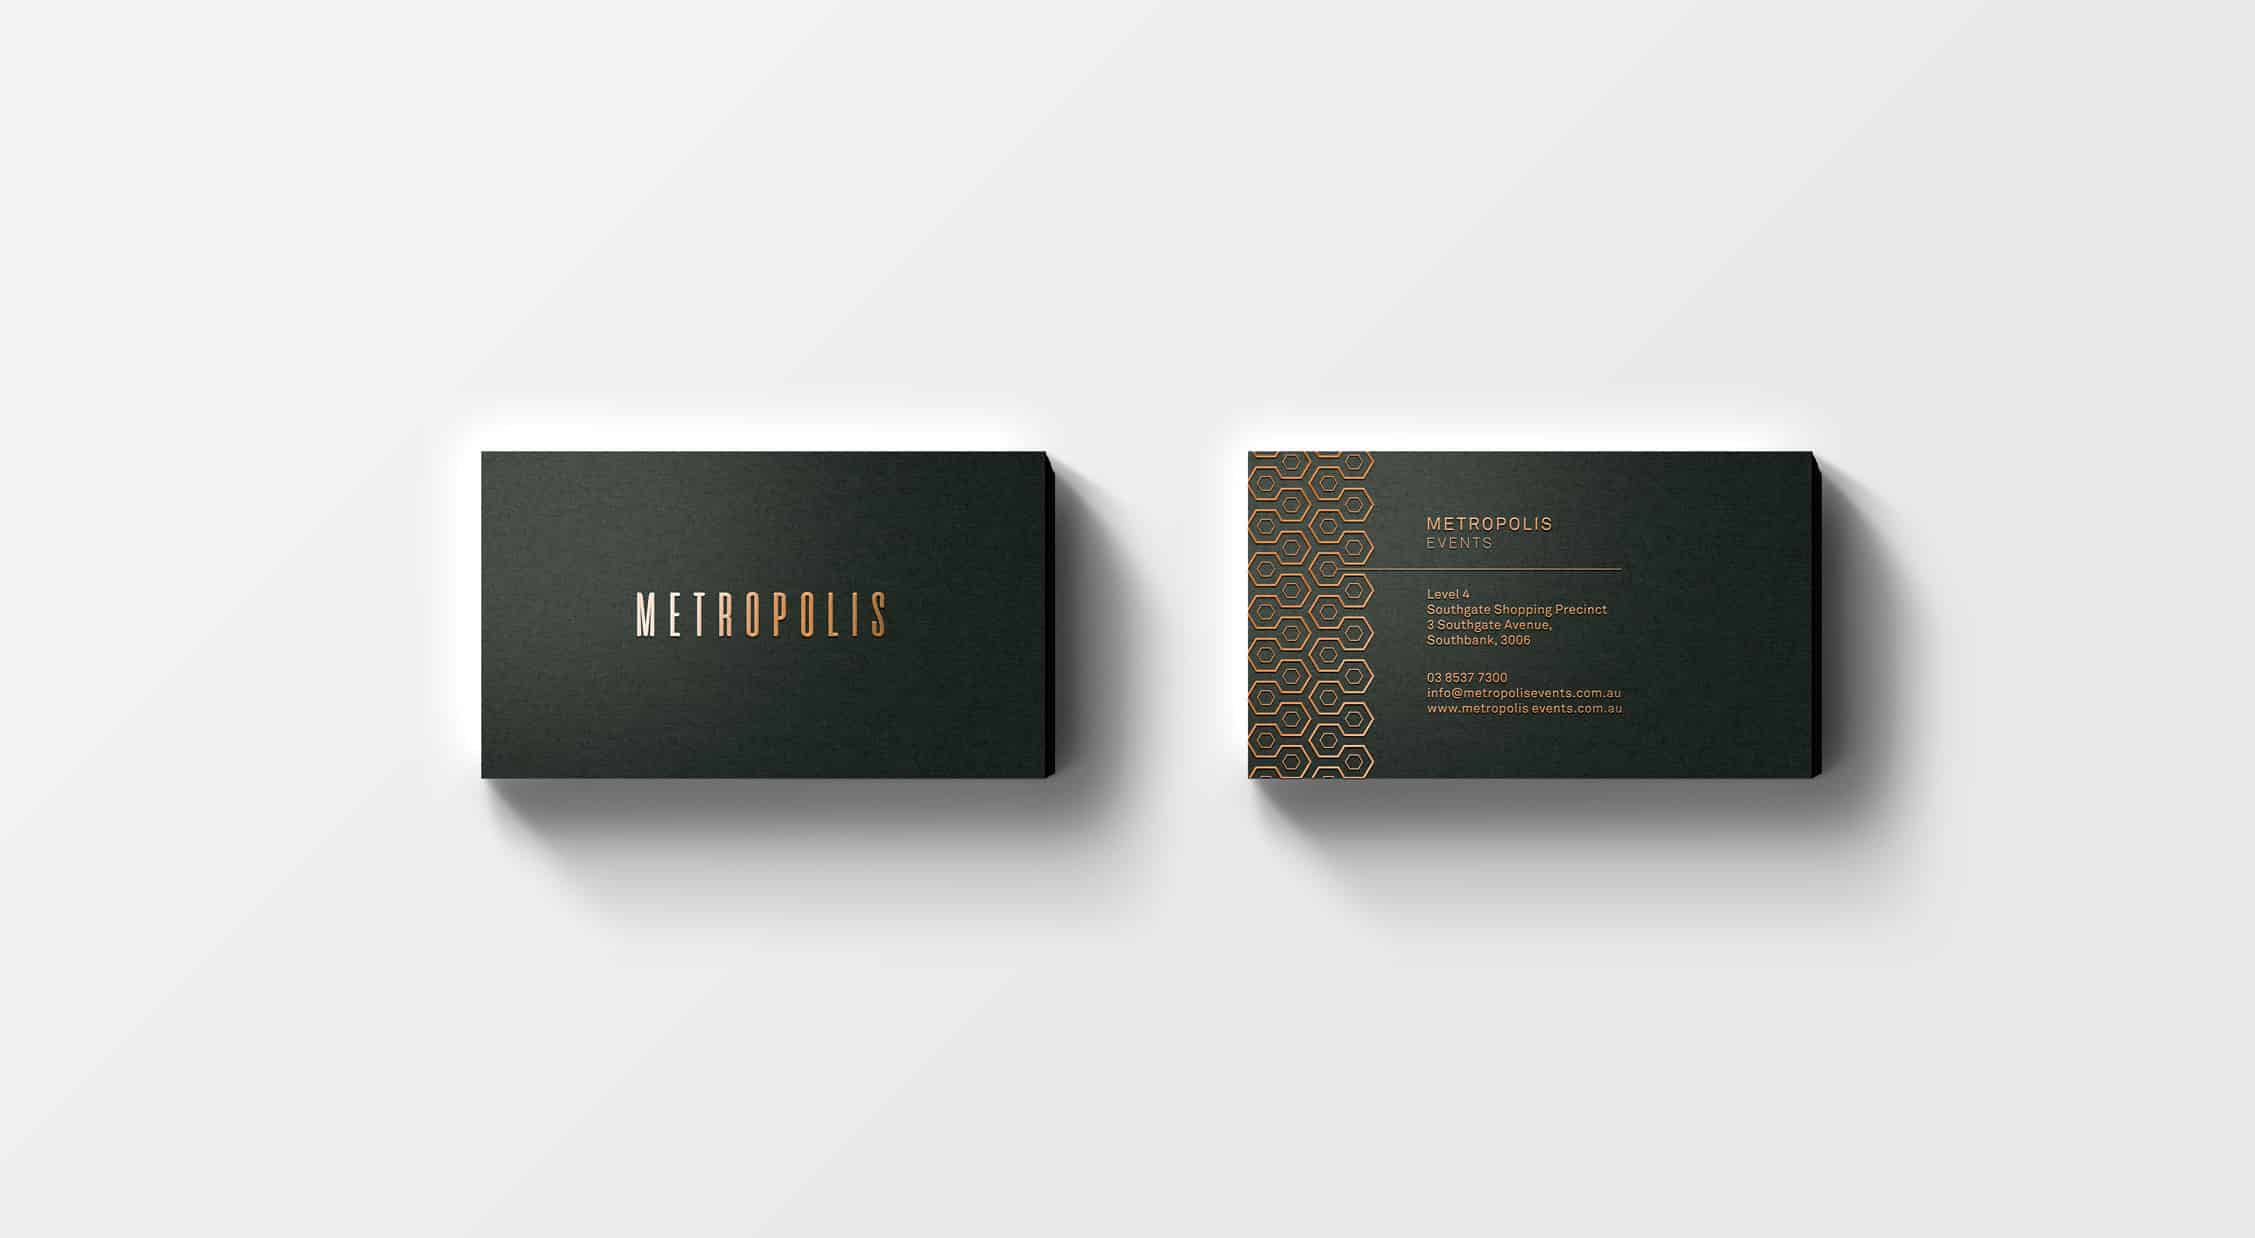 Metropolis Events - Branding and Website Design